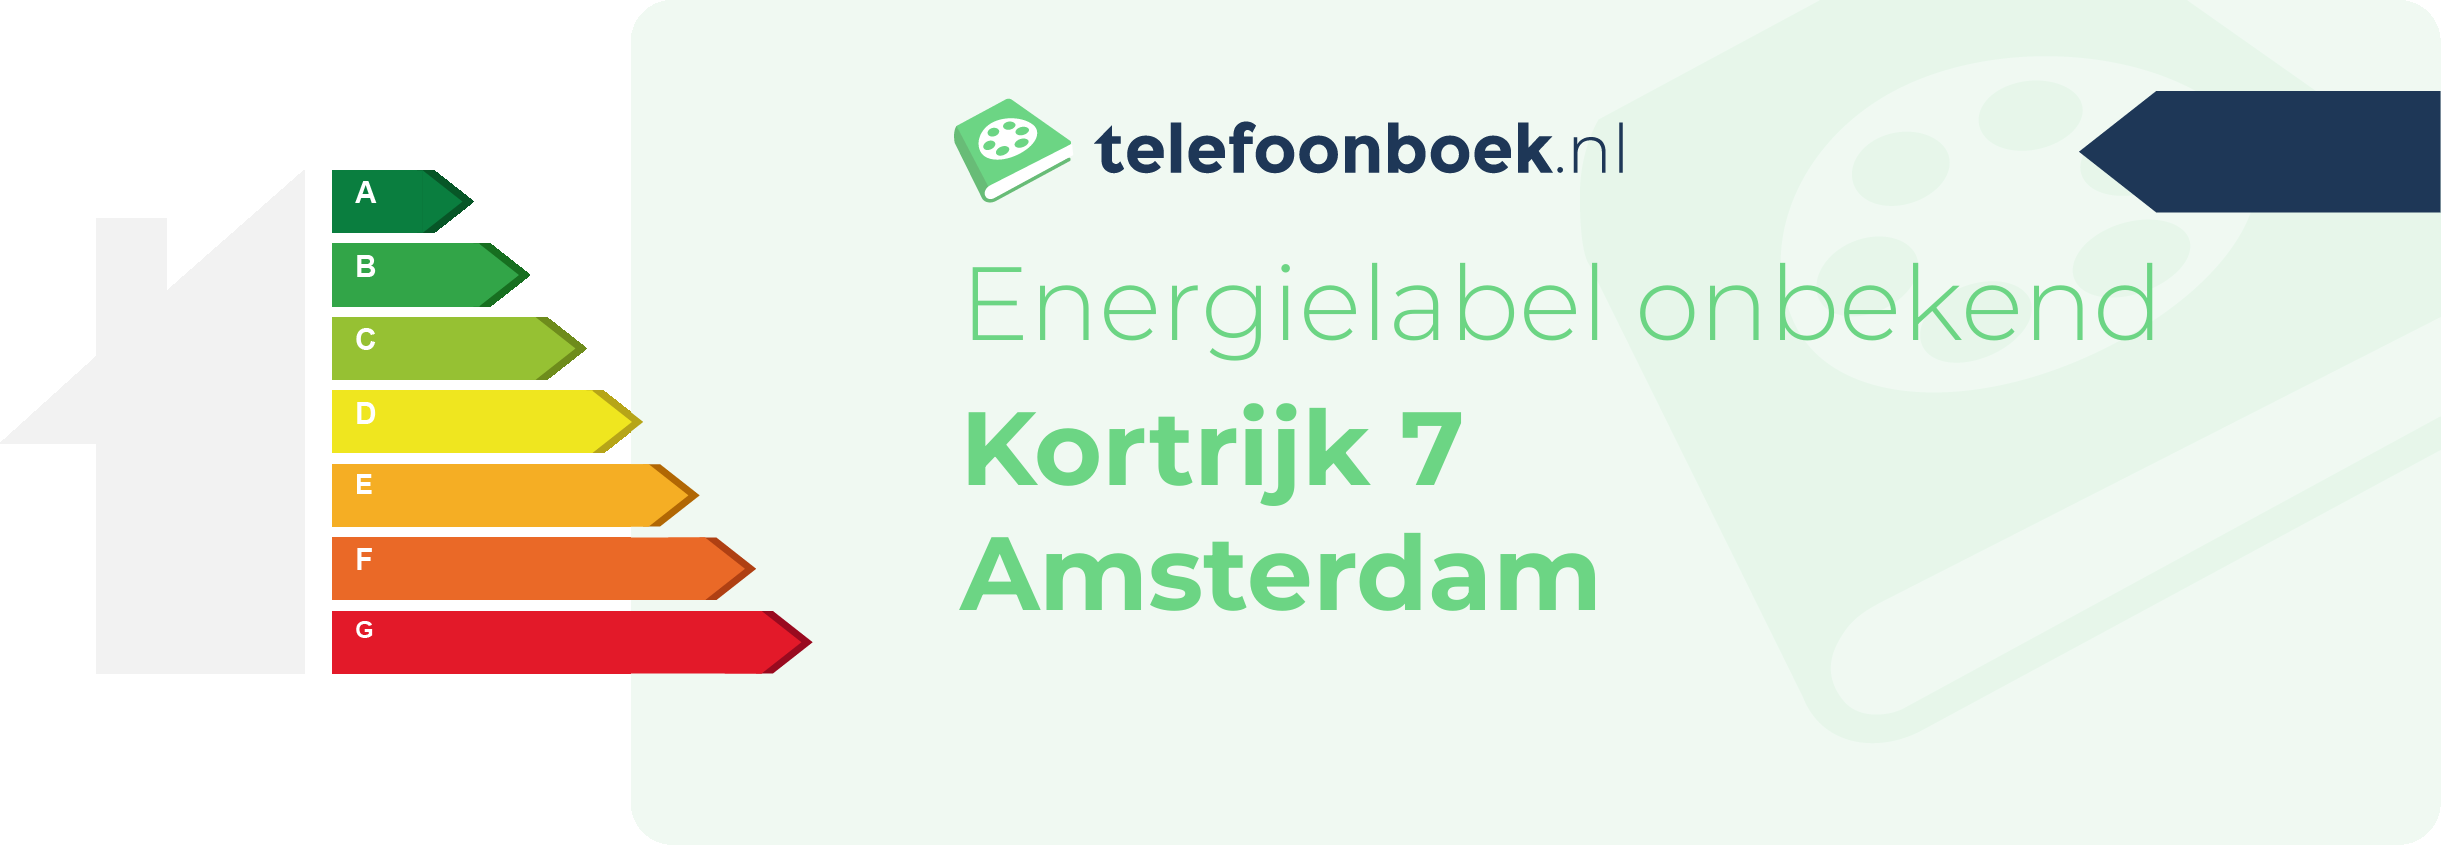 Energielabel Kortrijk 7 Amsterdam